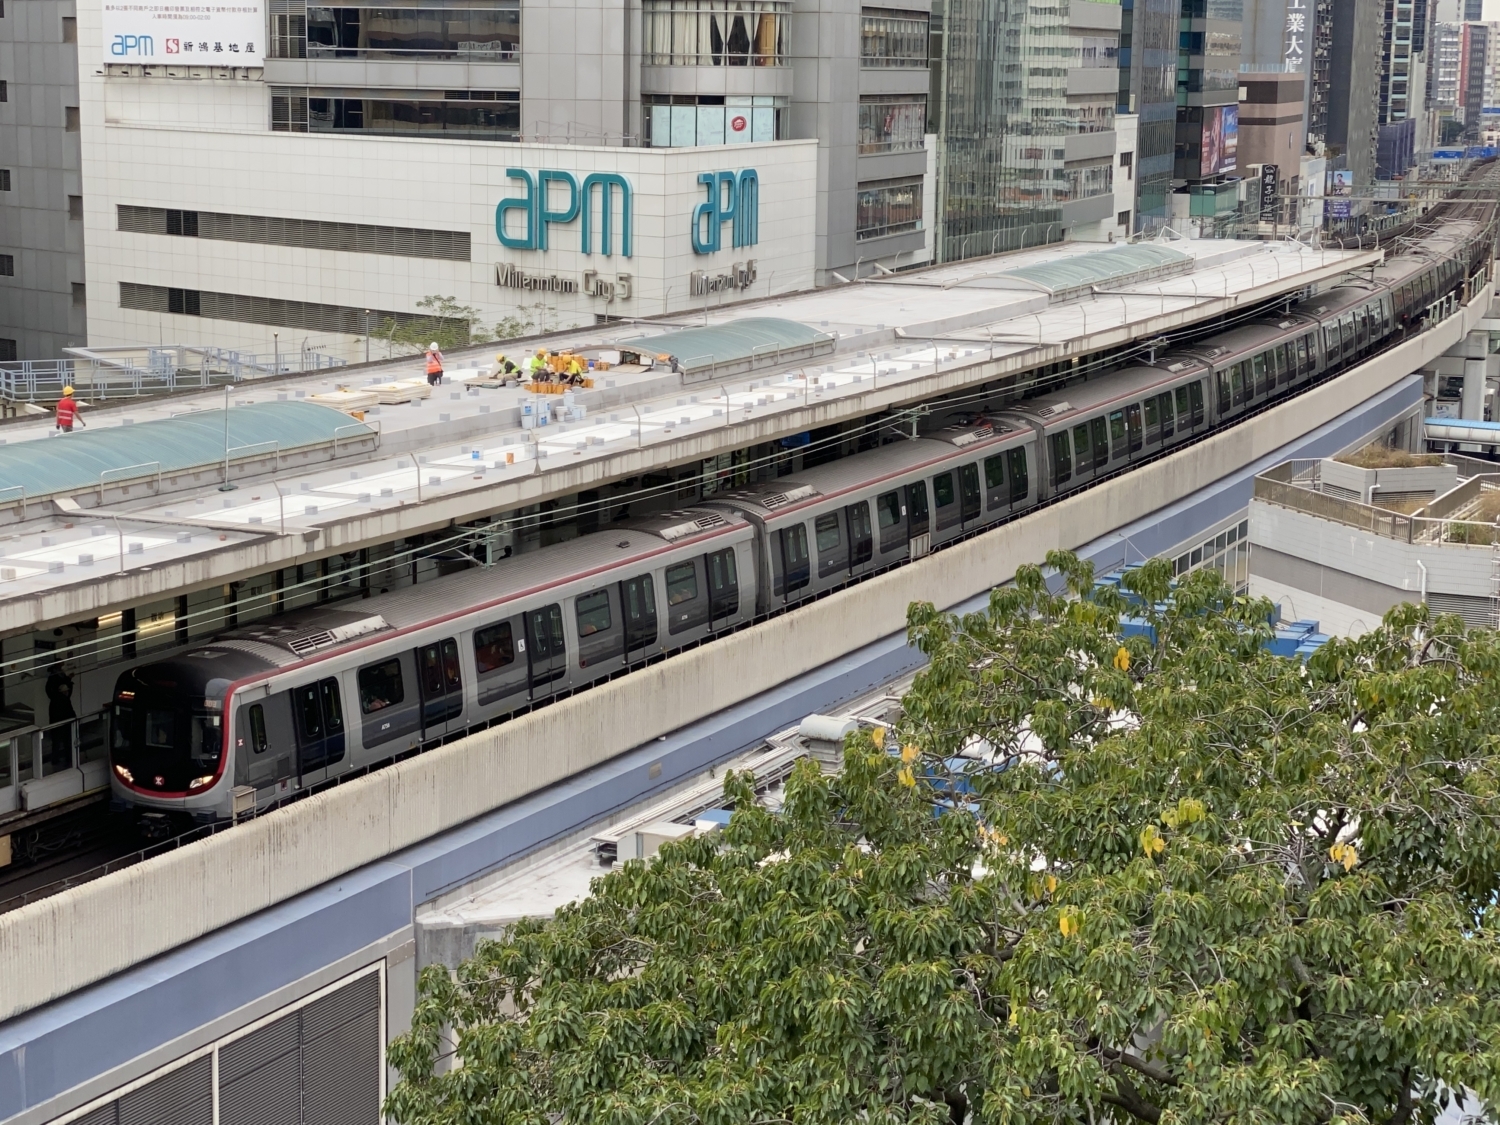 Nejstarší soupravy Metro-Cammell EMU (M-Train) britské provenience postupně nahrazují jednotky Q-Train od činského CRRC. Snímek pochází ze stanice Kwun Tong, která je součástí sítě historicky prvního úseku MTR. (zdroj: wikipedia.en, autor: LN 9267)